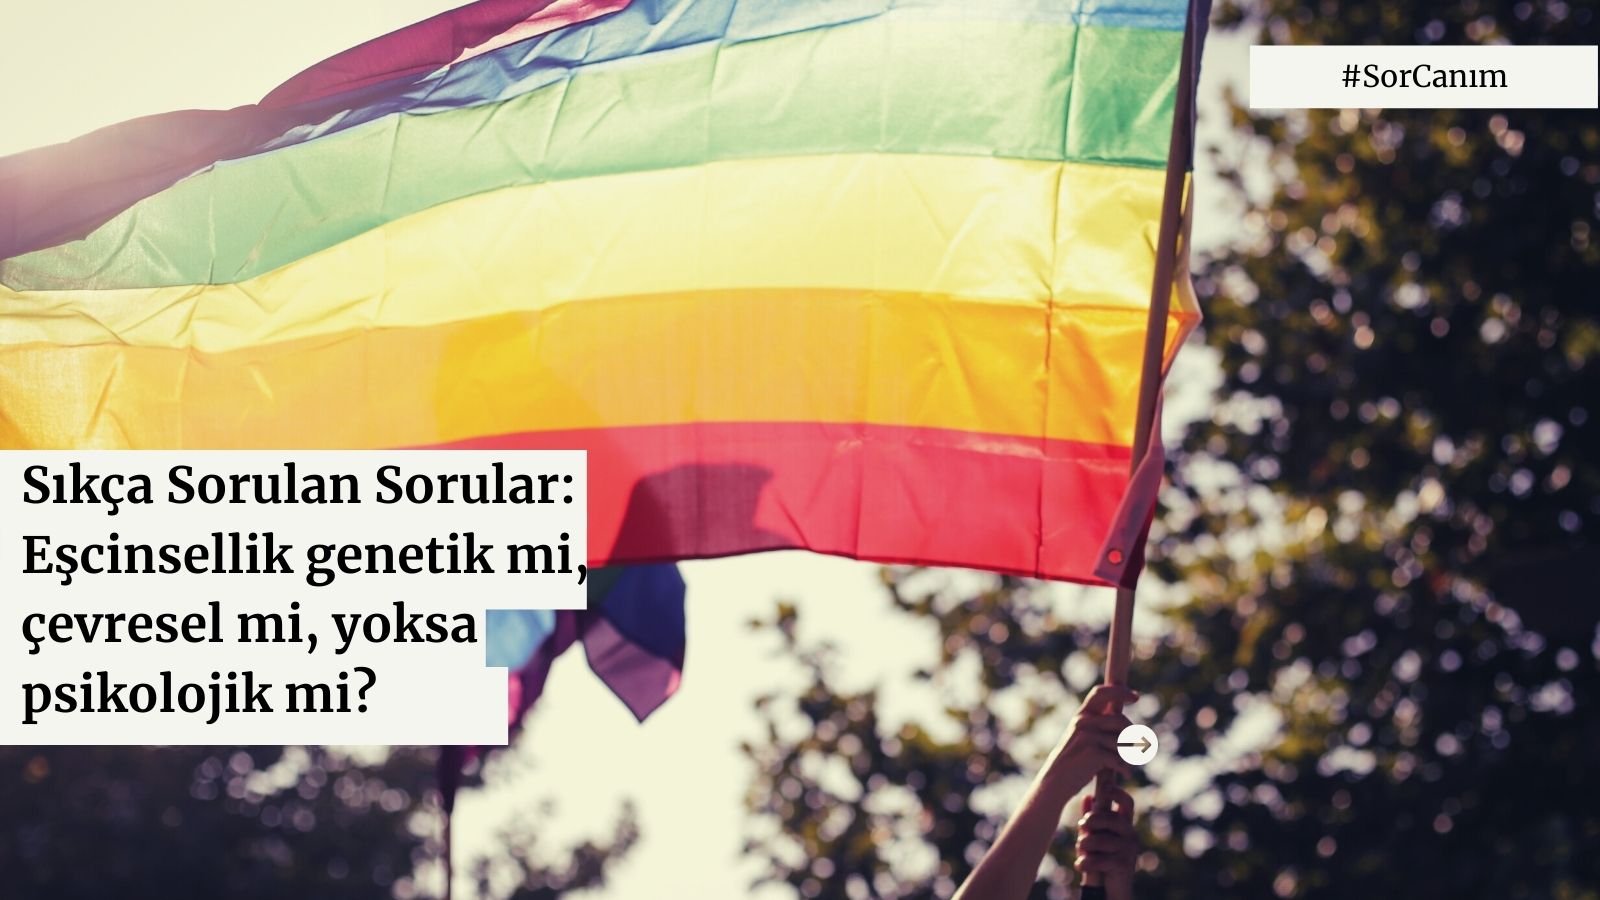 Sor canım: “Eşcinsellik genetik mi, çevresel mi, yoksa psikolojik mi?” | Kaos GL - LGBTİ+ Haber Portalı